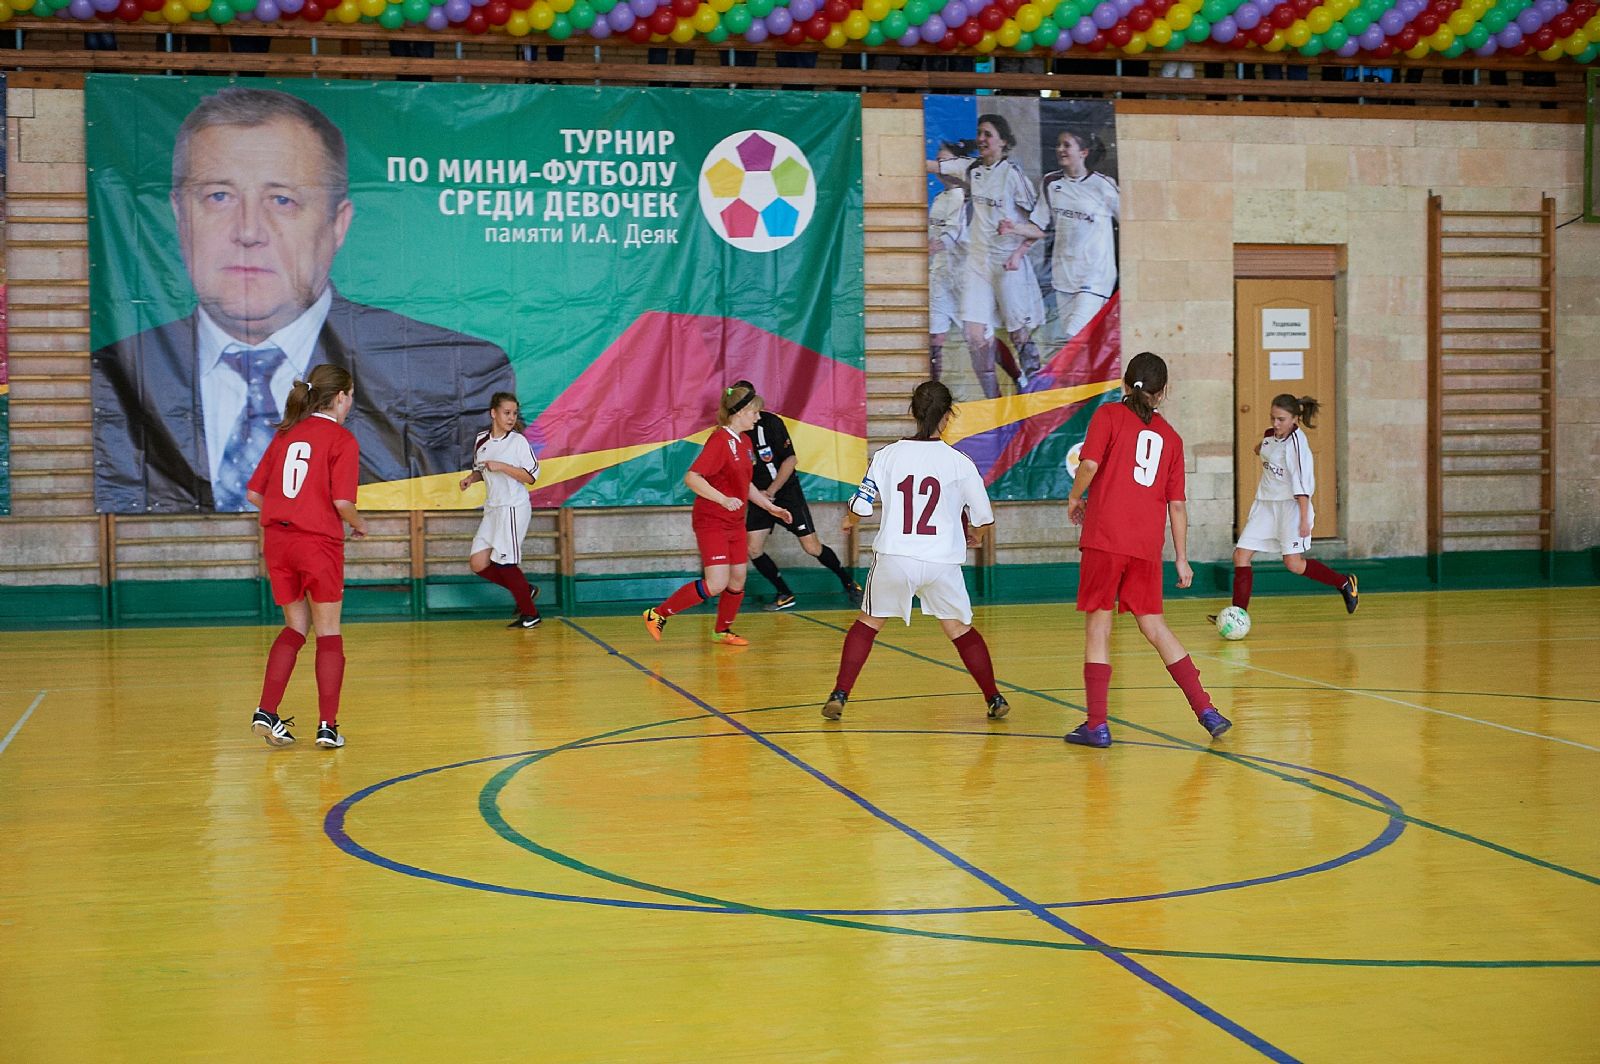 В Сергиевом Посаде завершился турнир по мини-футболу памяти И.А.Деяк